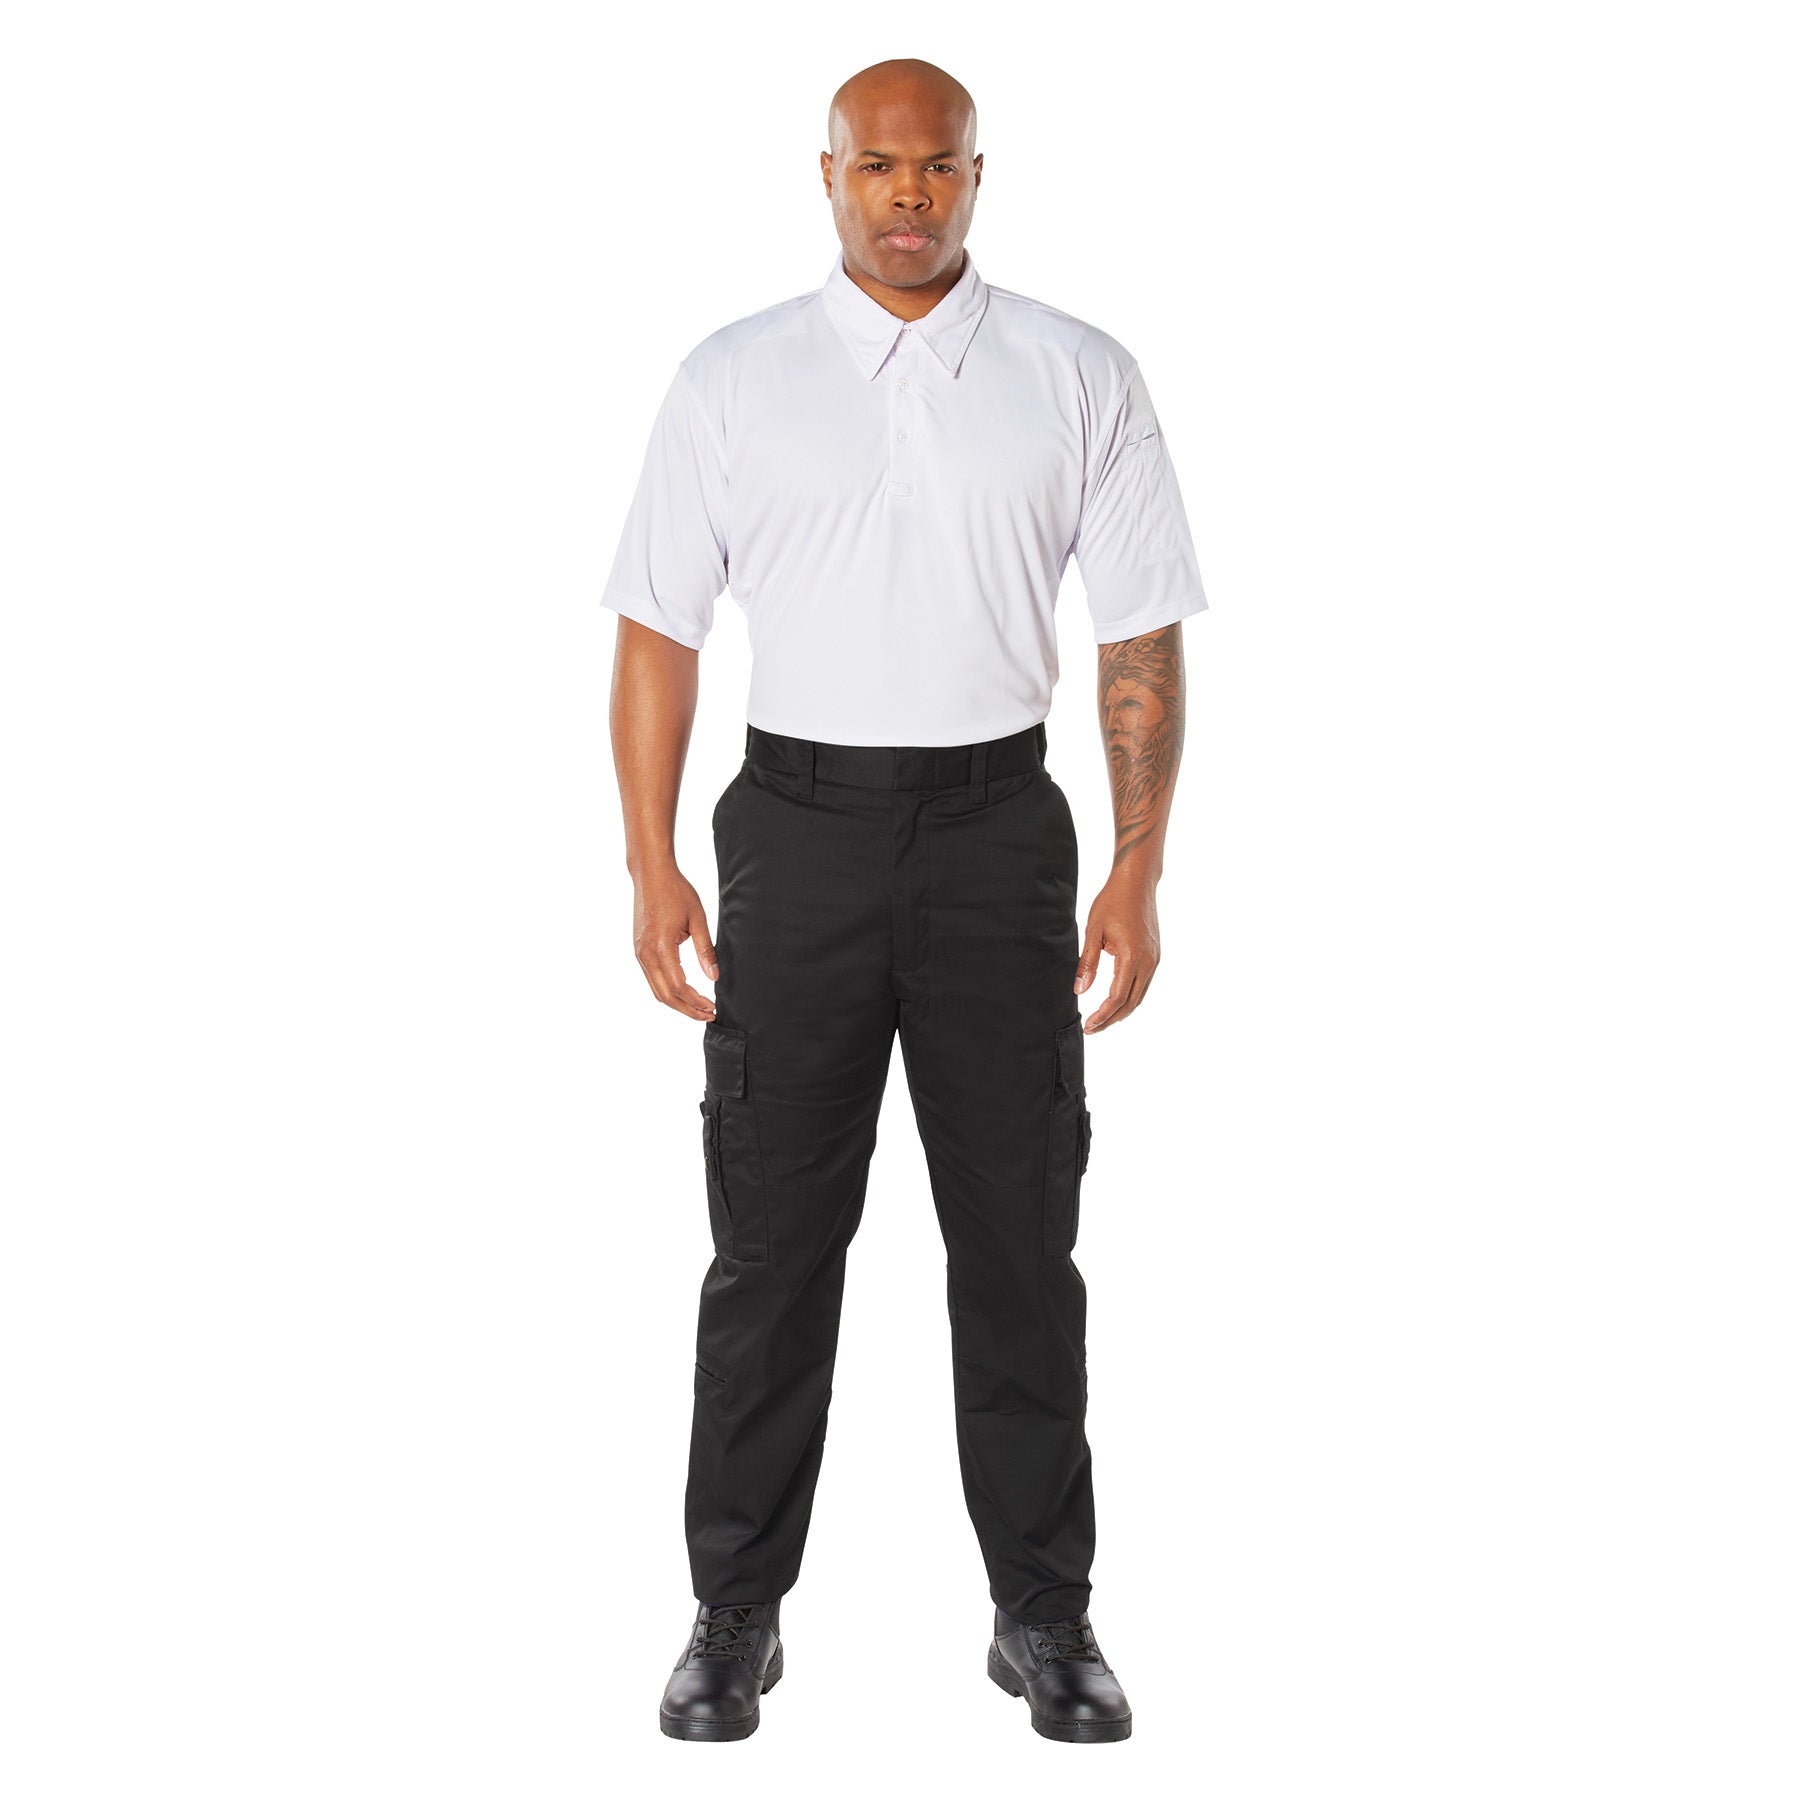 [Public Safety] Poly/Cotton Deluxe EMT Tactical Pants Black